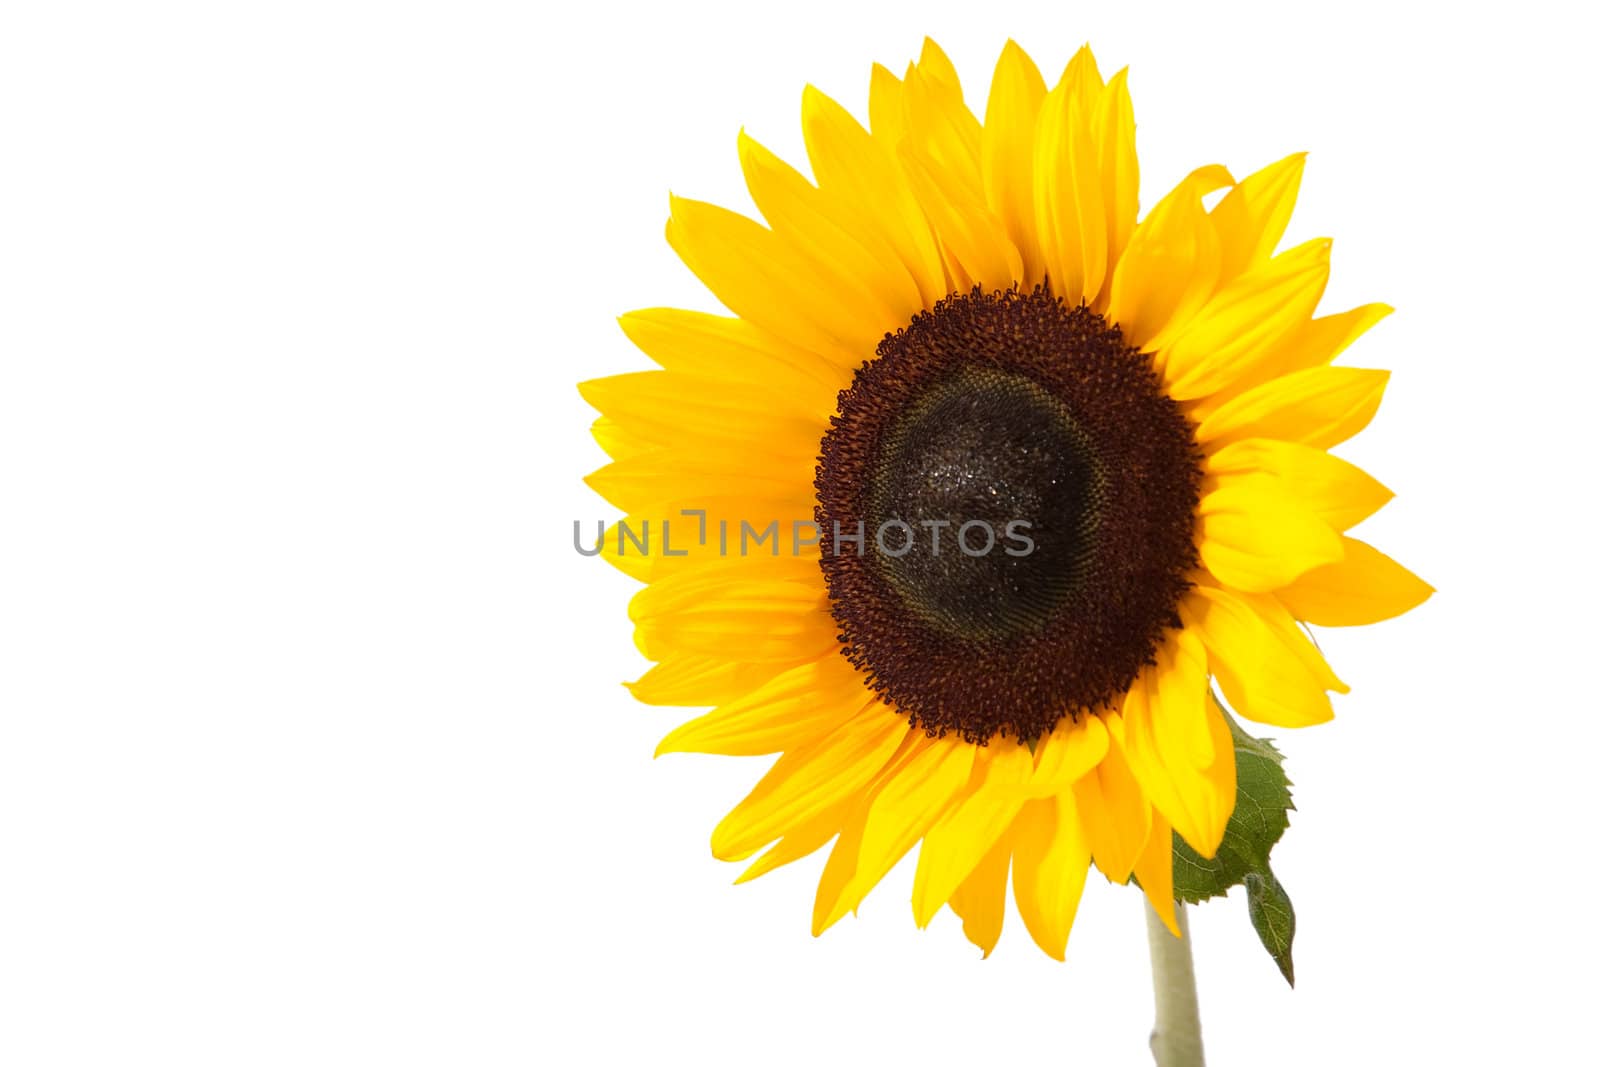 Sunflower by alex_garaev